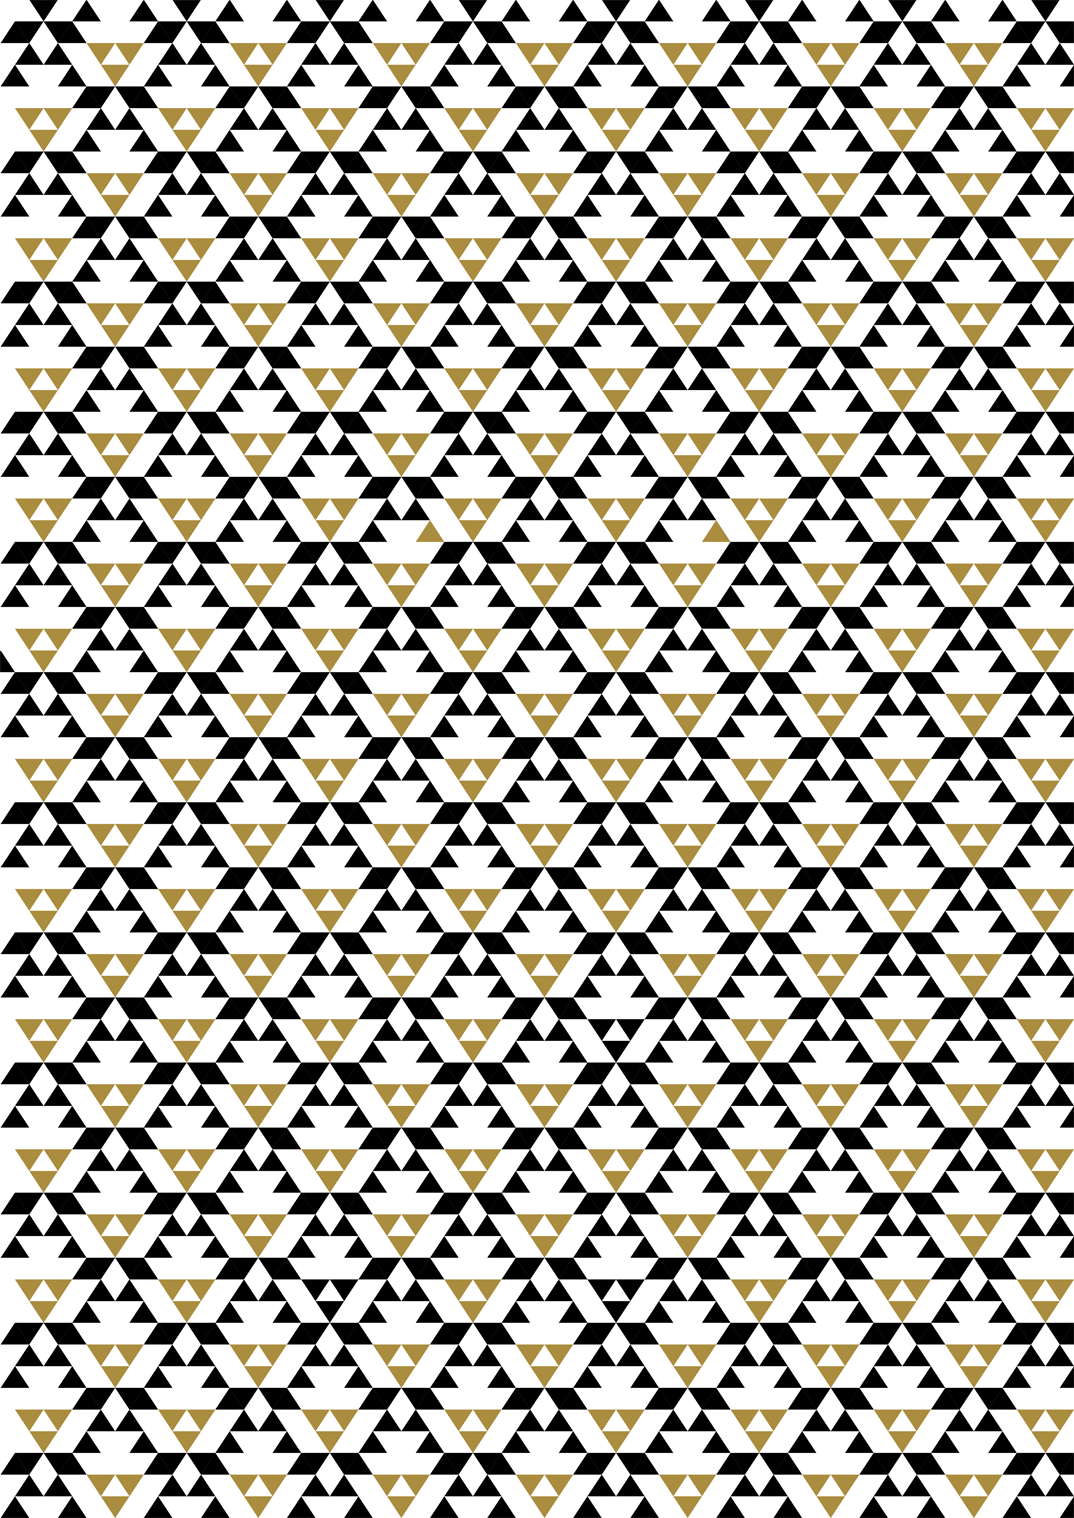 Patterns hexels